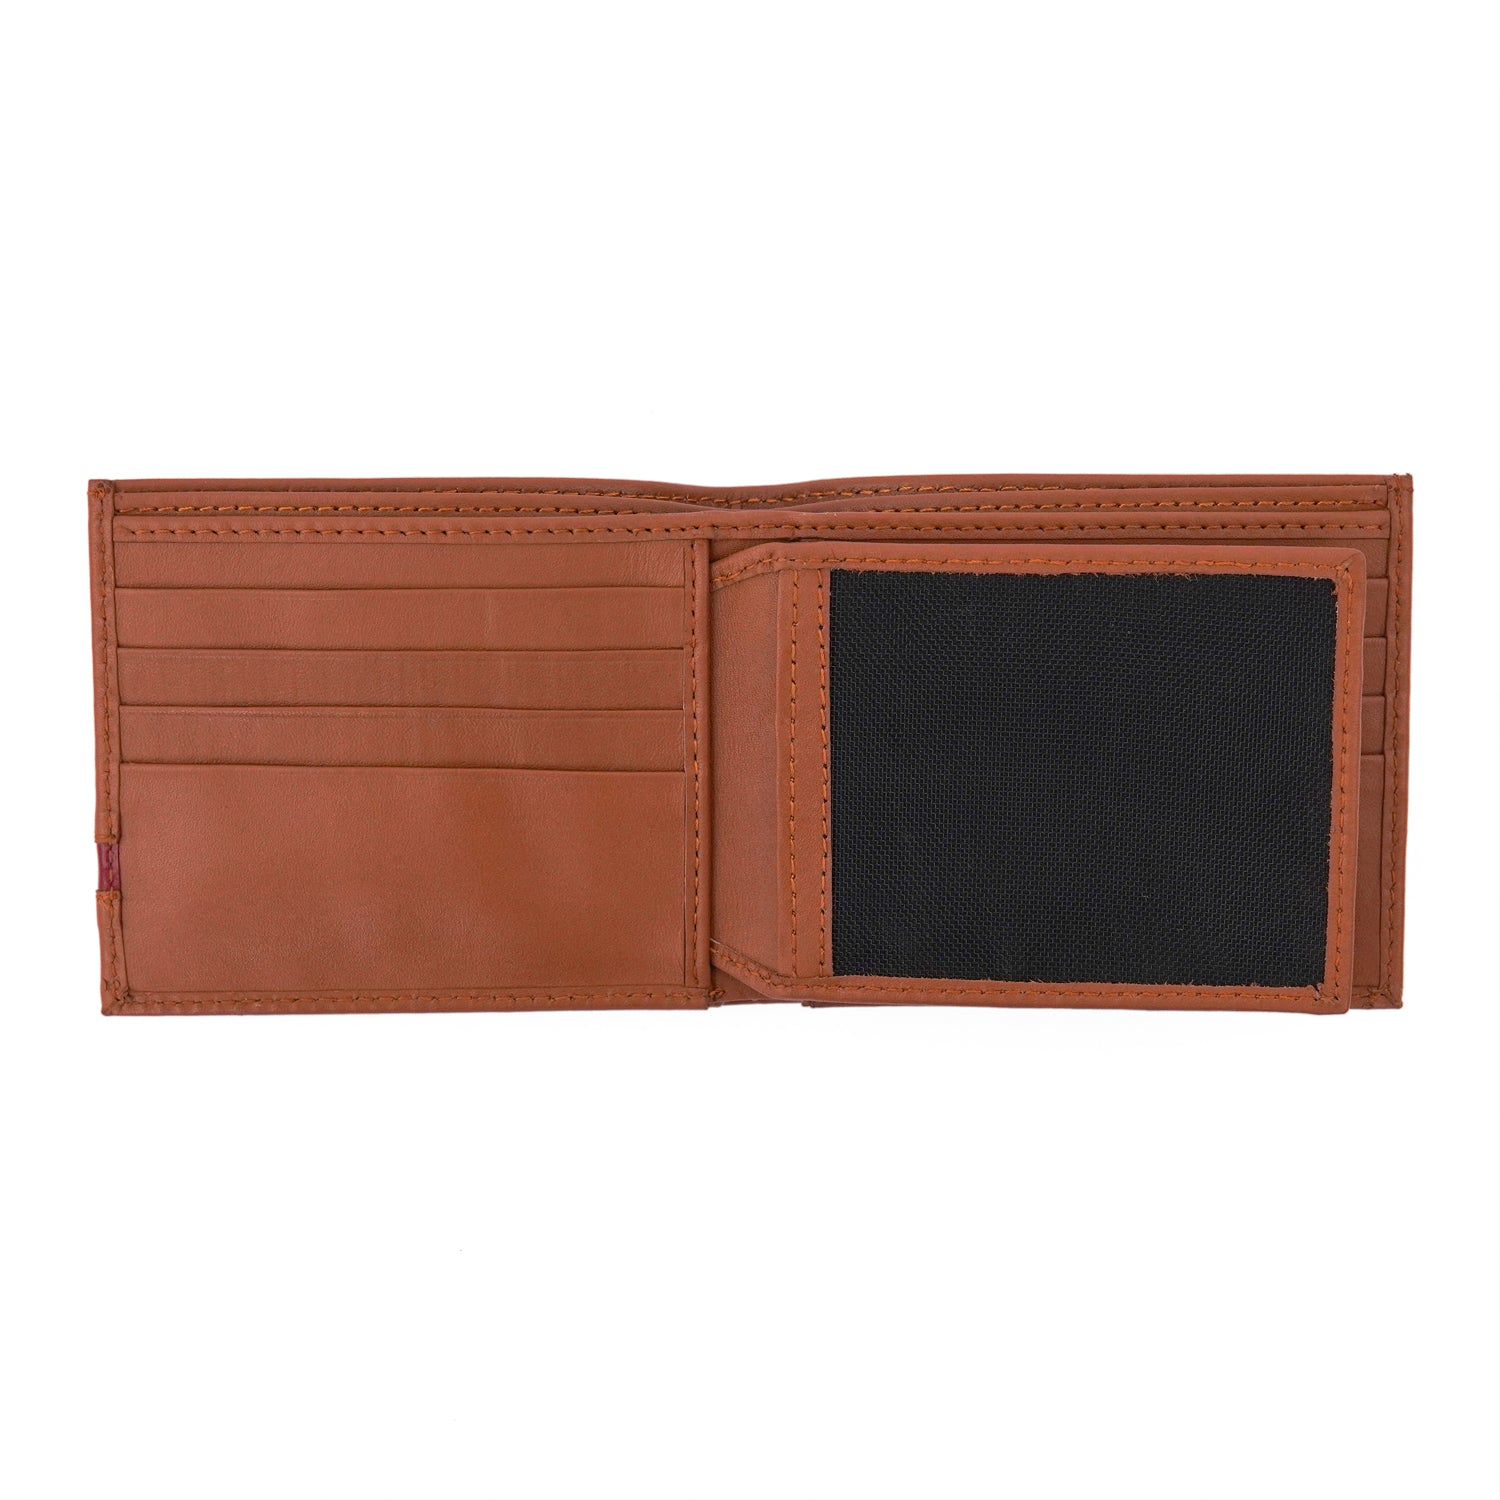 Steven Leather Wallet – Tan